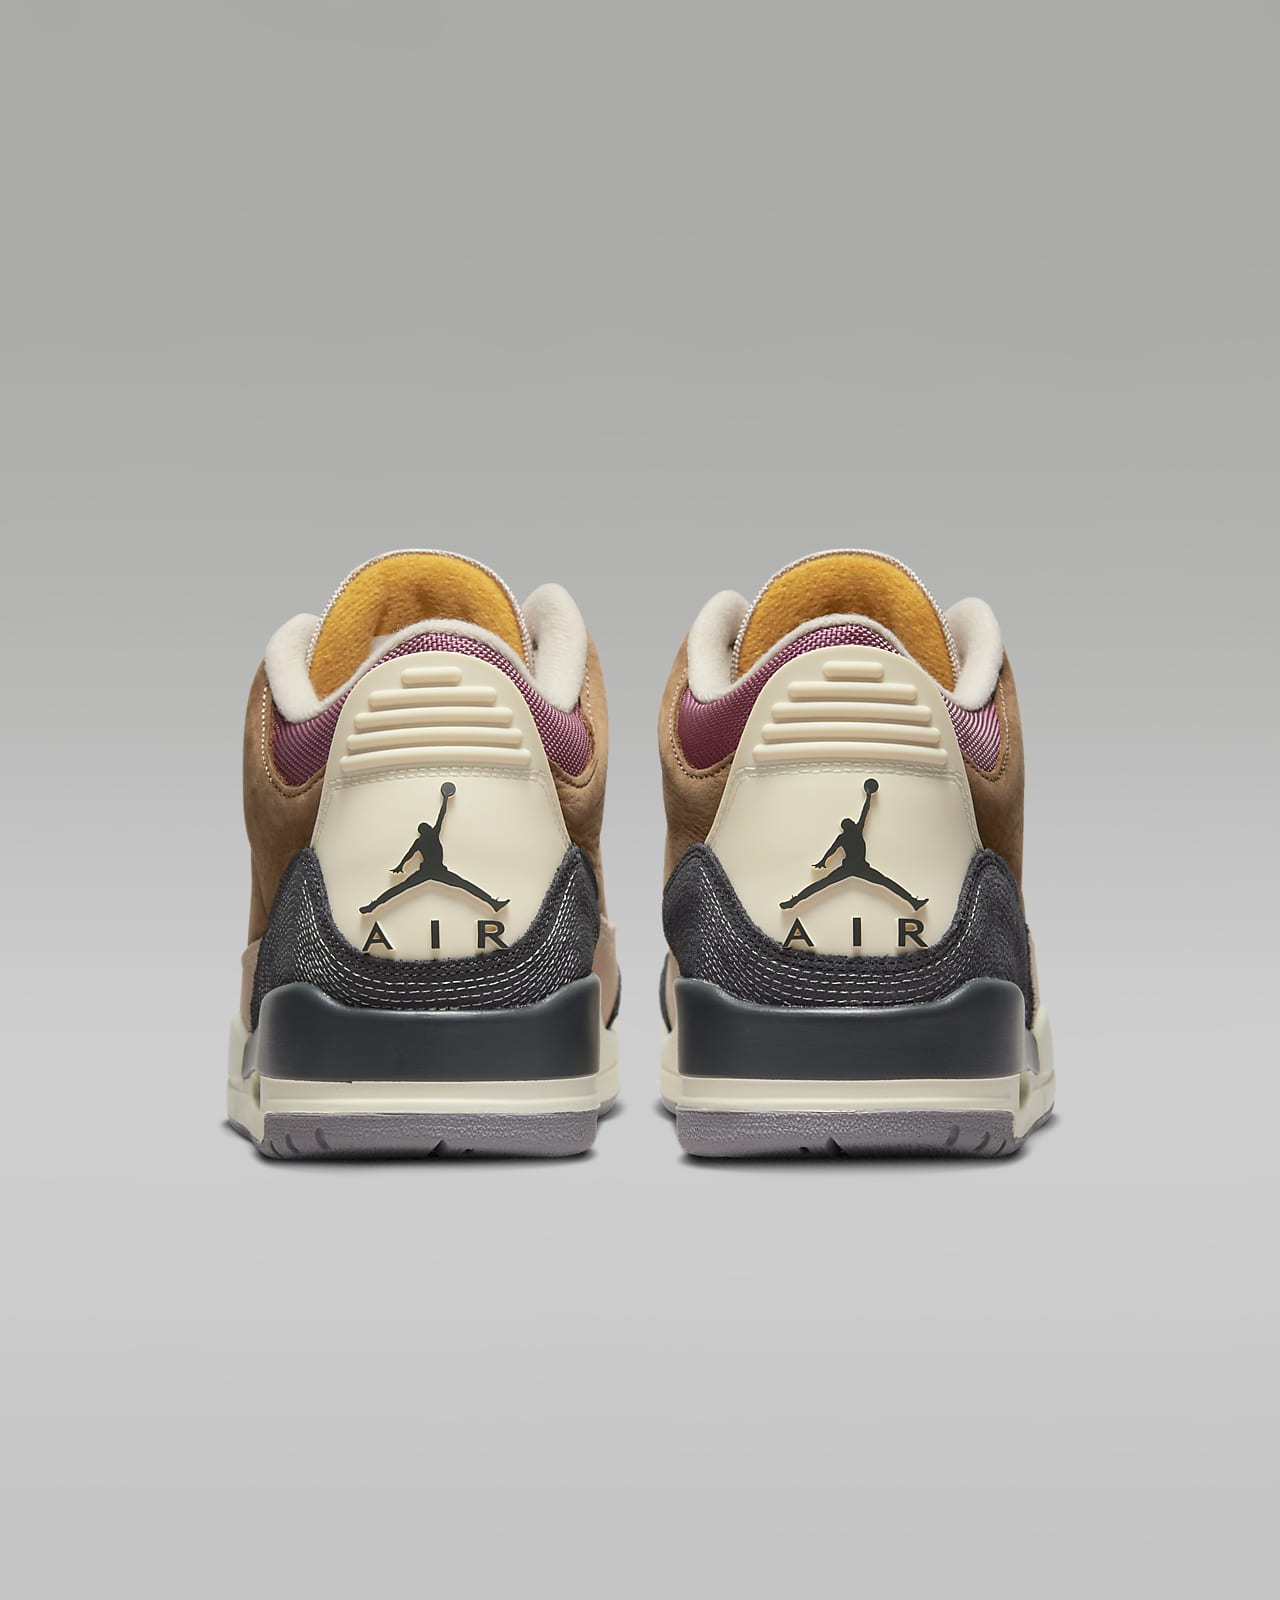 Air Jordan 3 Retro SE 复刻男子运动鞋